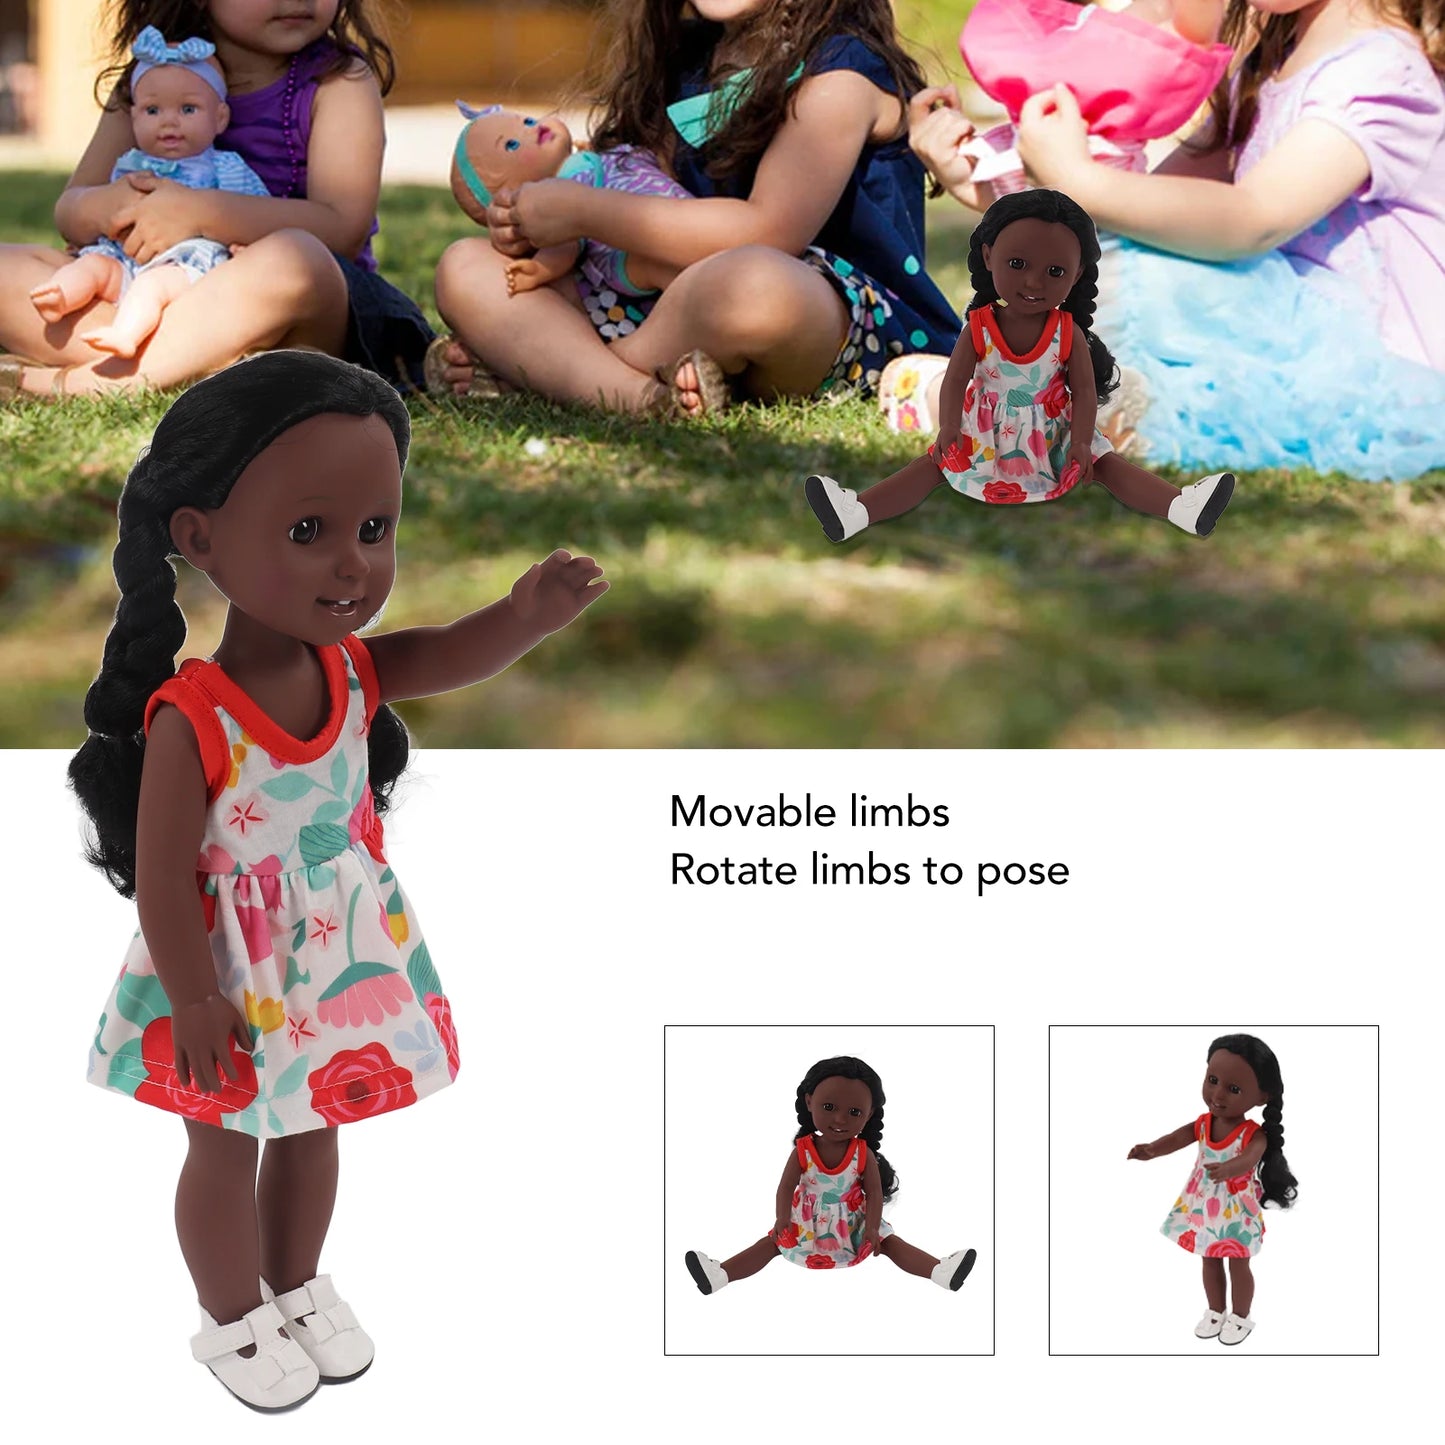 15inch African American Reborn Doll